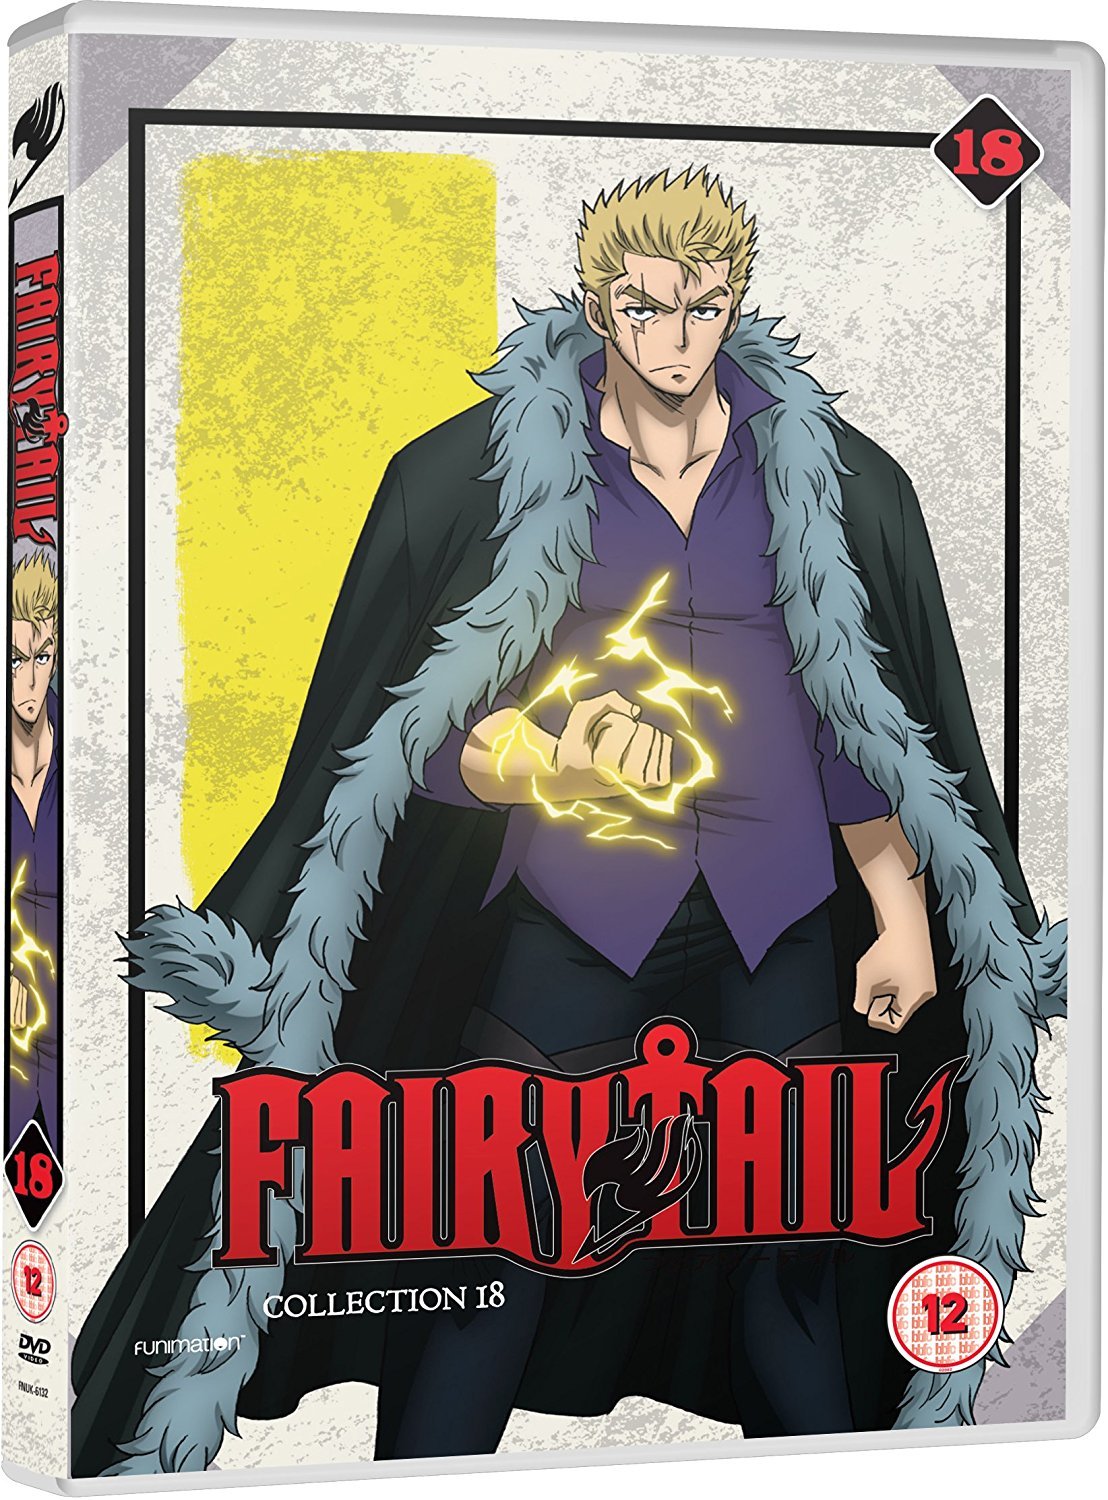 Melhor arco <3 Edolas :3  Fairy tail guild, Fairy tail, Anime